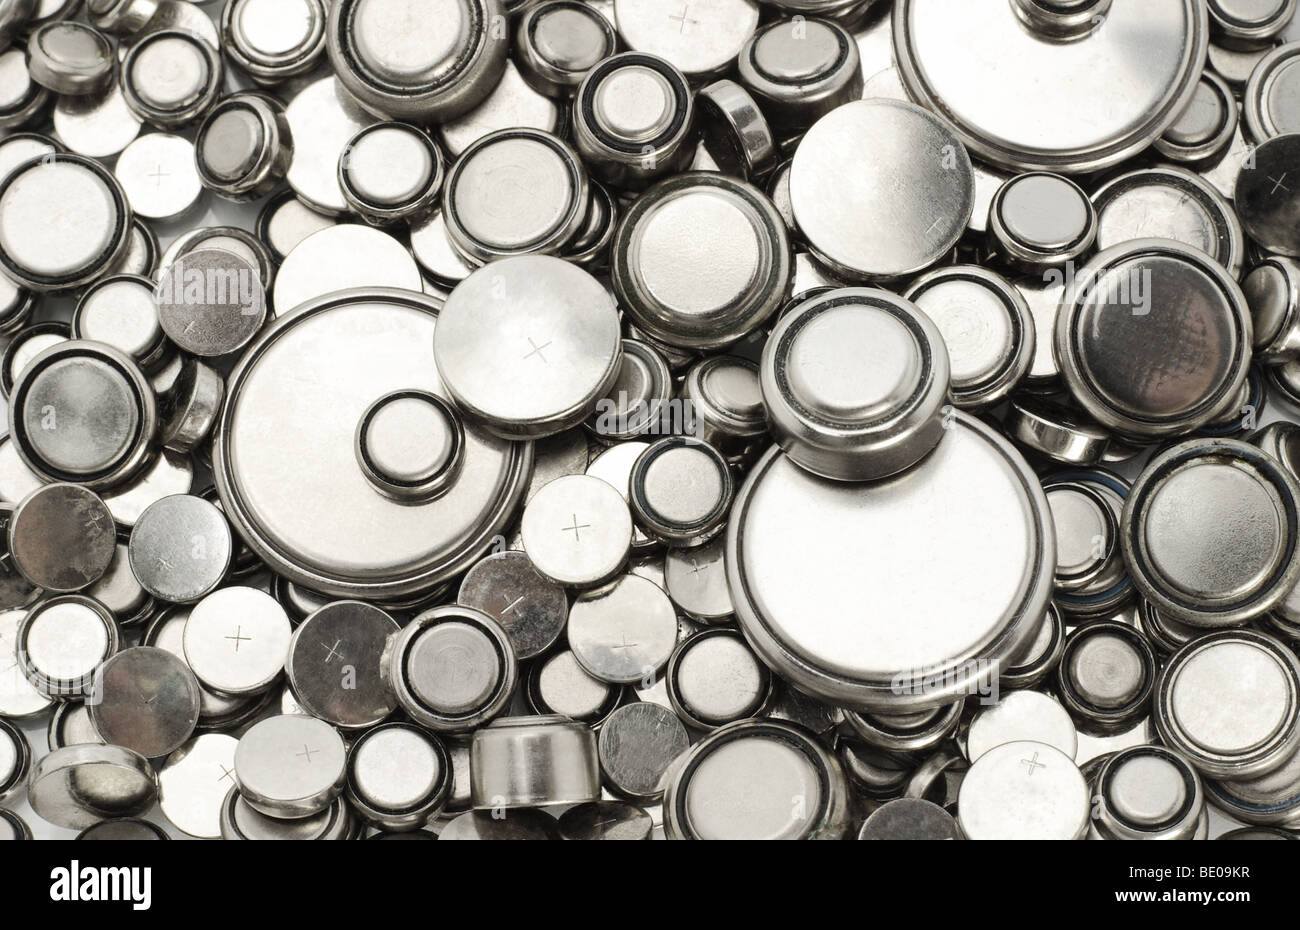 Image de fond de batteries au lithium de différentes tailles Banque D'Images